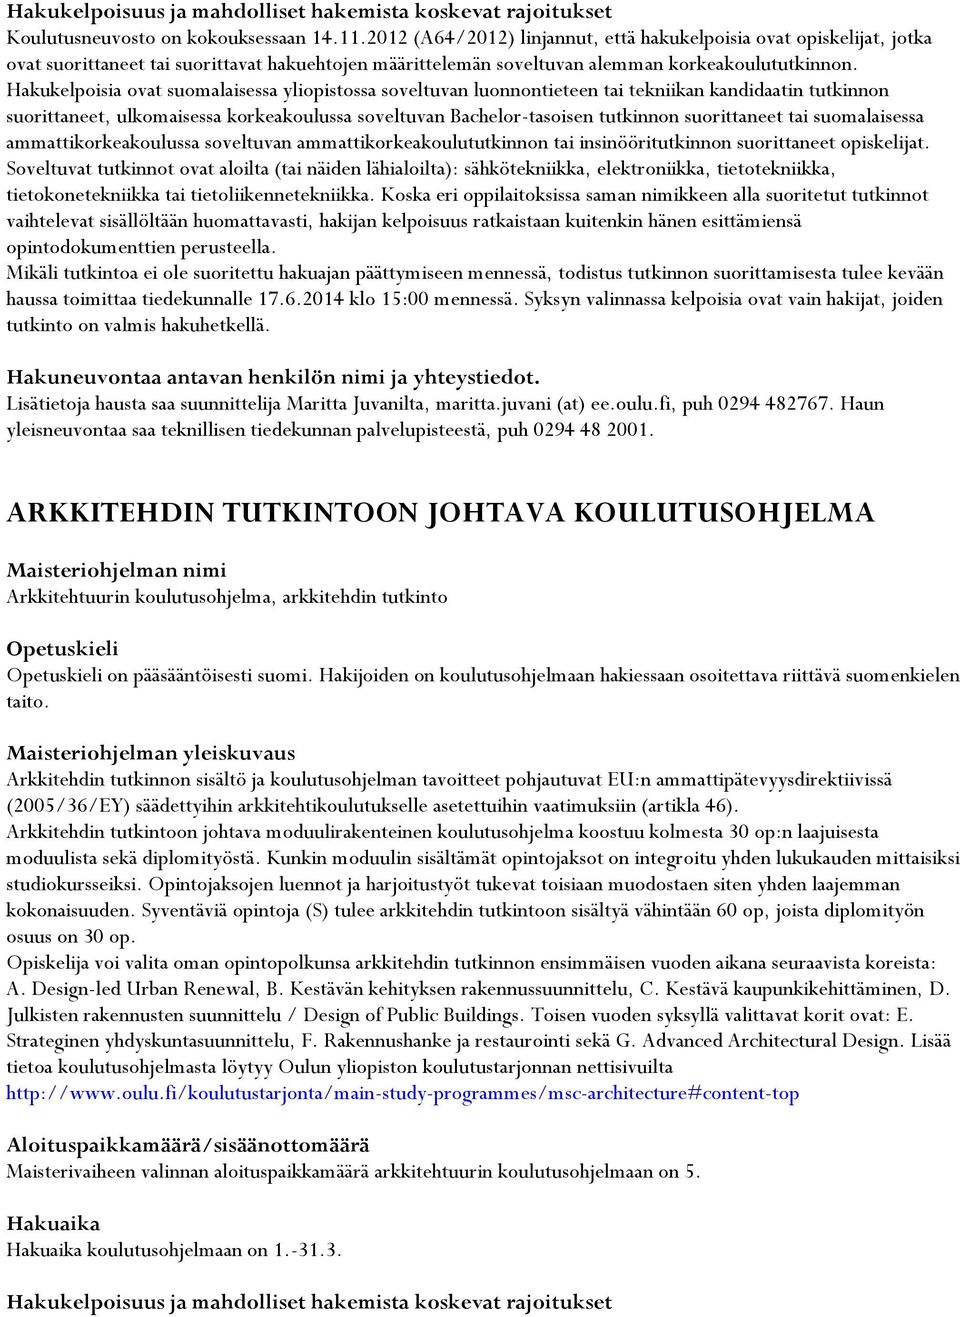 Hakukelpoisia ovat suomalaisessa yliopistossa soveltuvan luonnontieteen tai tekniikan kandidaatin tutkinnon suorittaneet, ulkomaisessa korkeakoulussa soveltuvan Bachelor-tasoisen tutkinnon